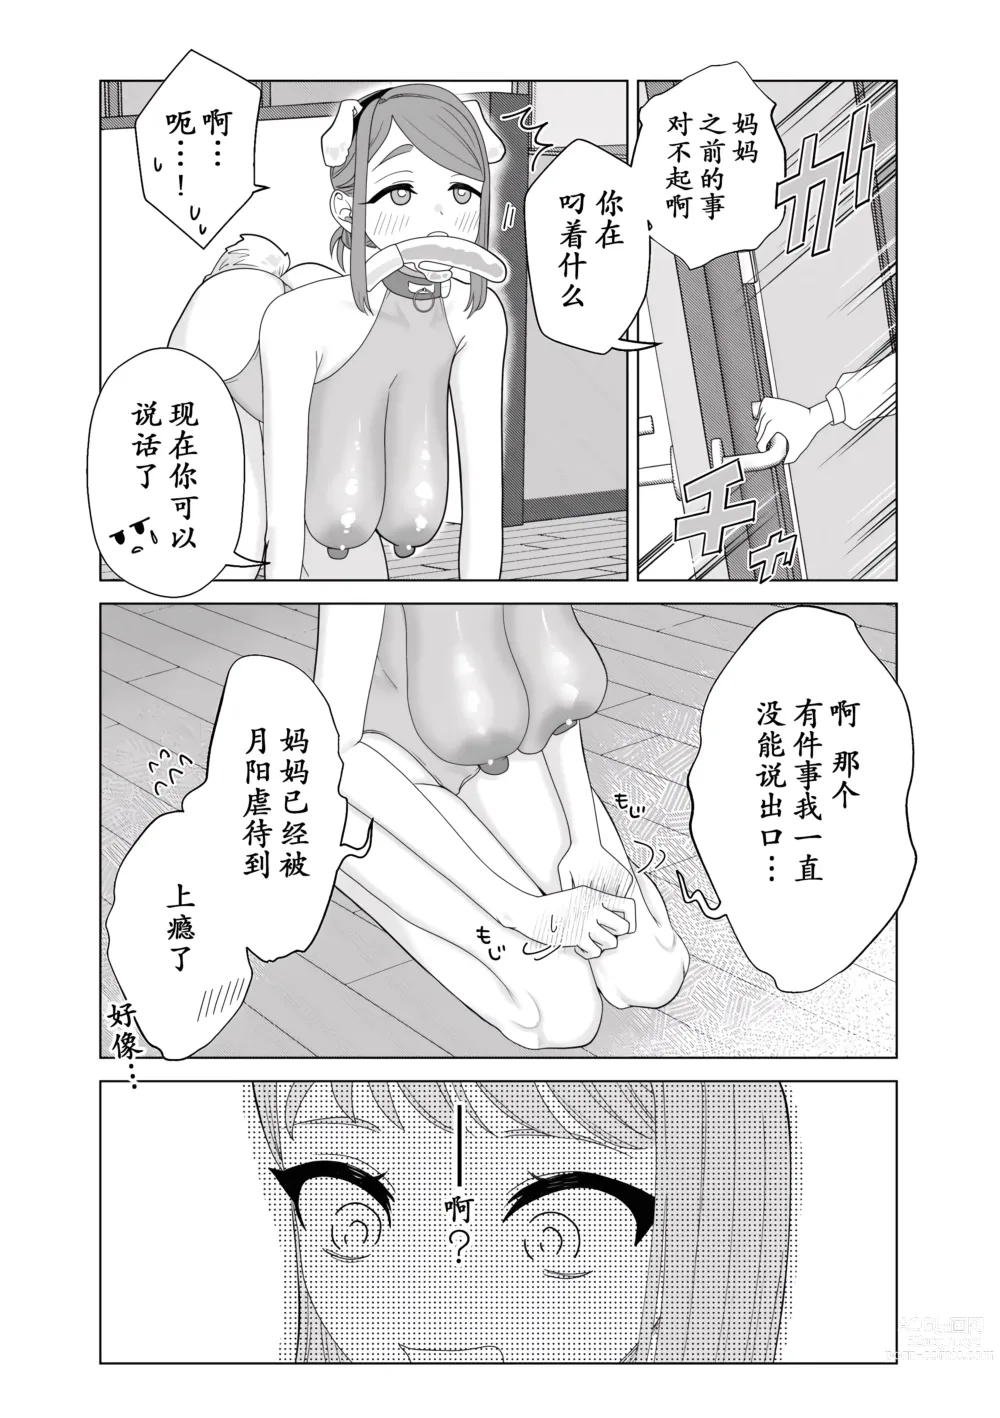 Page 19 of manga Mama wa Petto